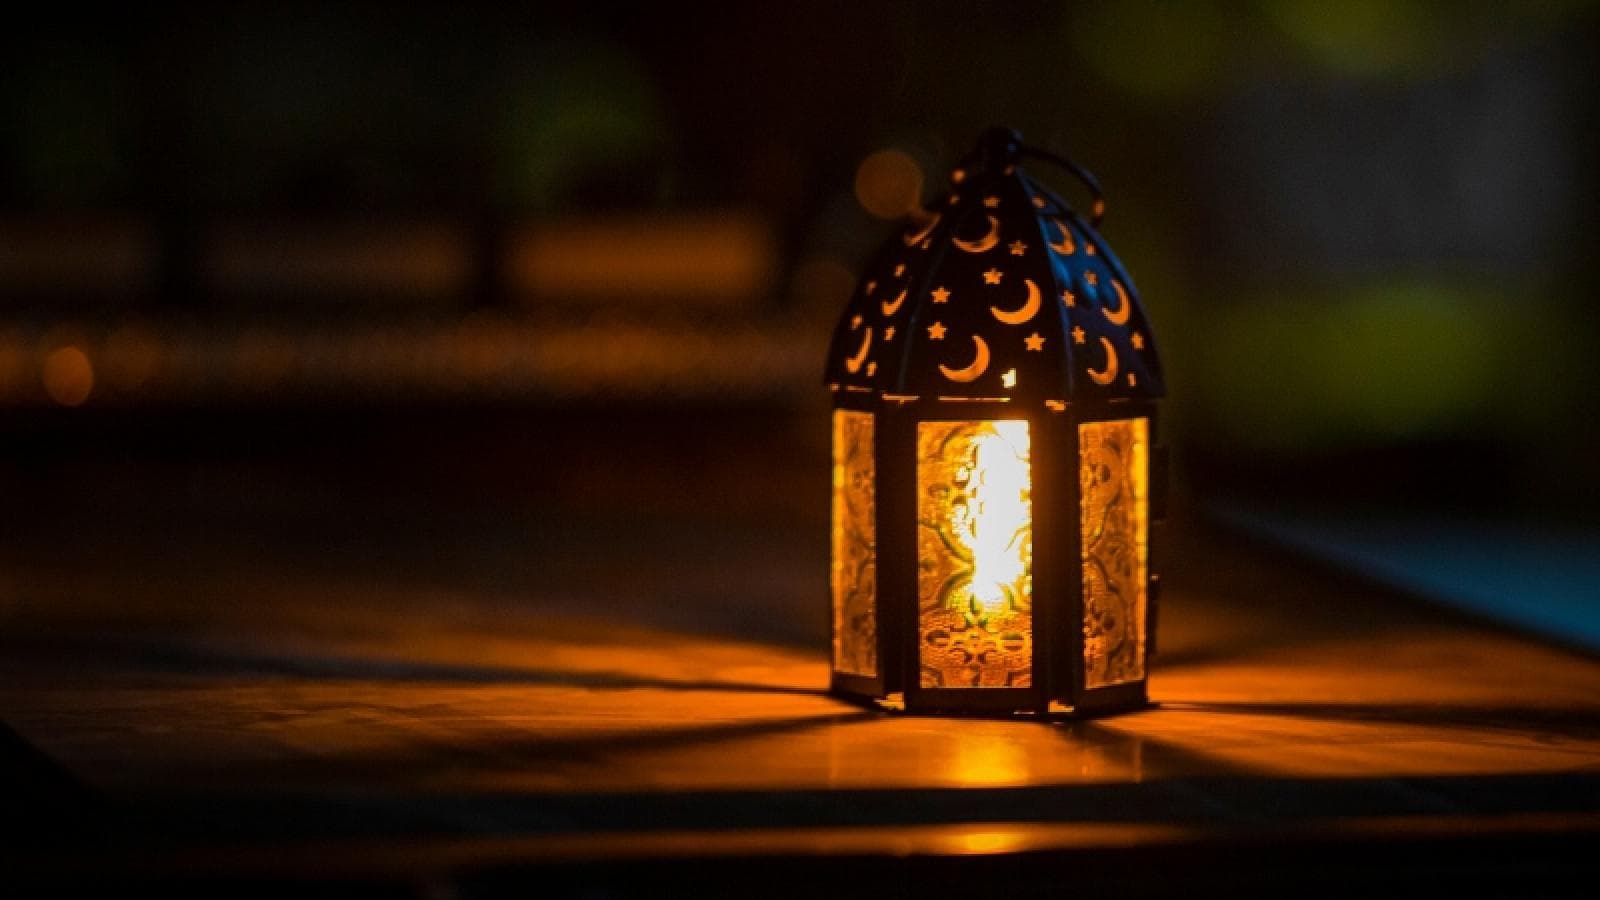 A lantern burns brightly in the dark.